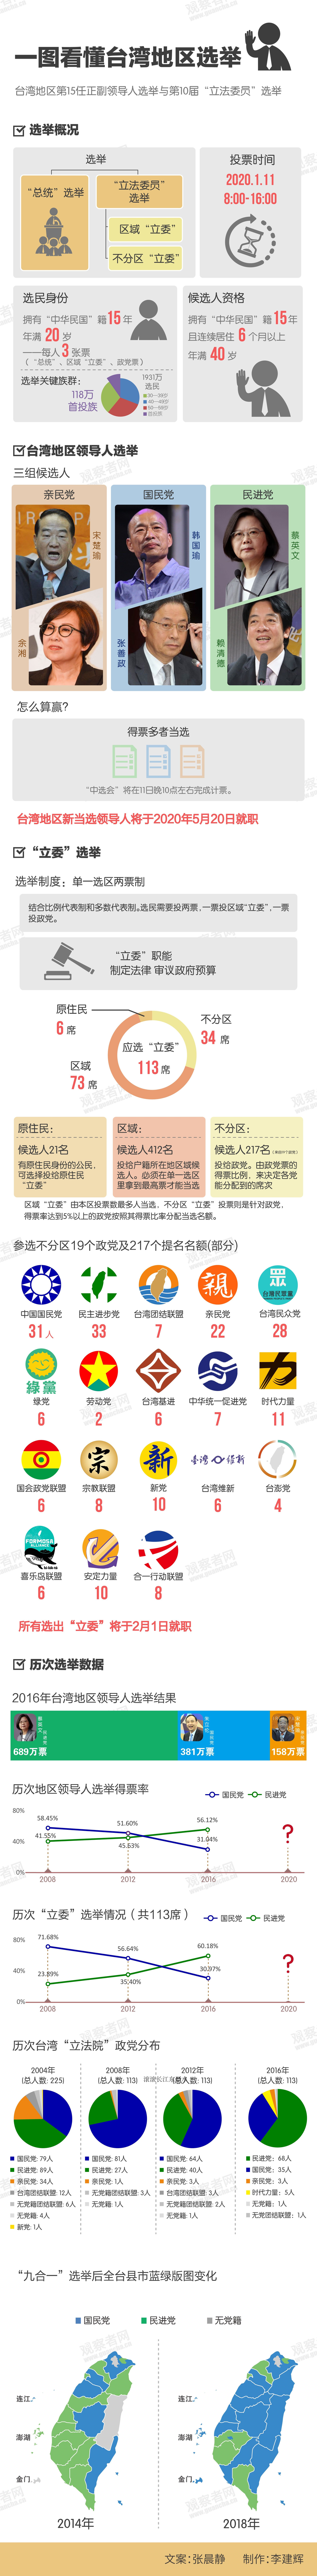 台湾大选立法委员选举